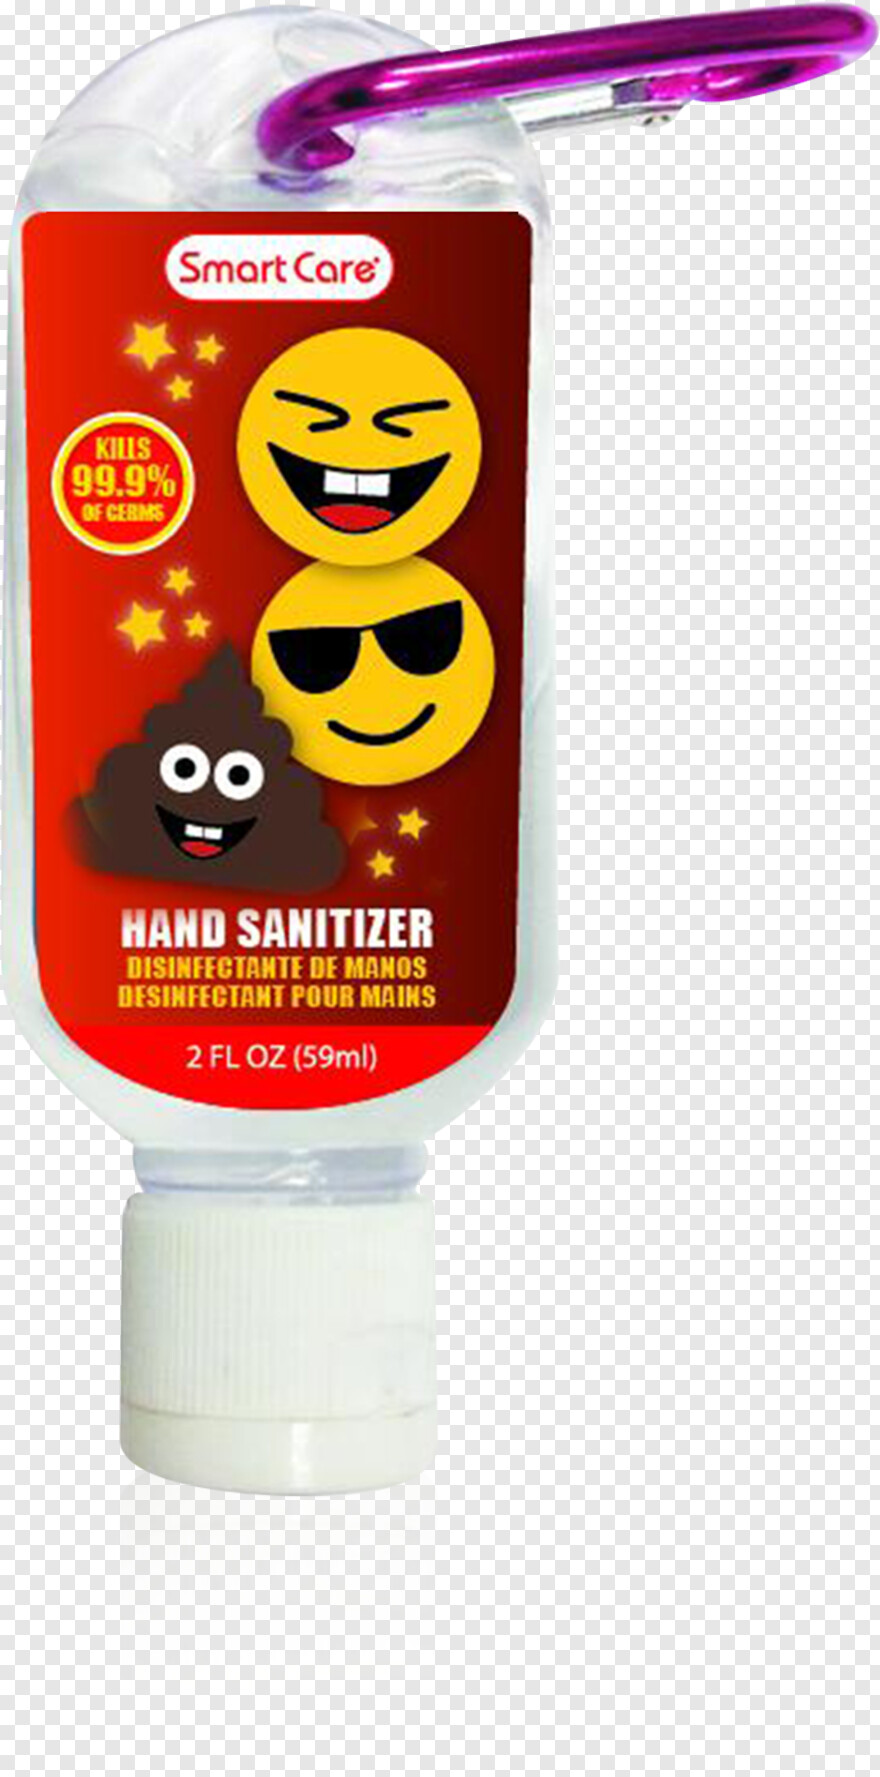 hand-sanitizer # 1063292